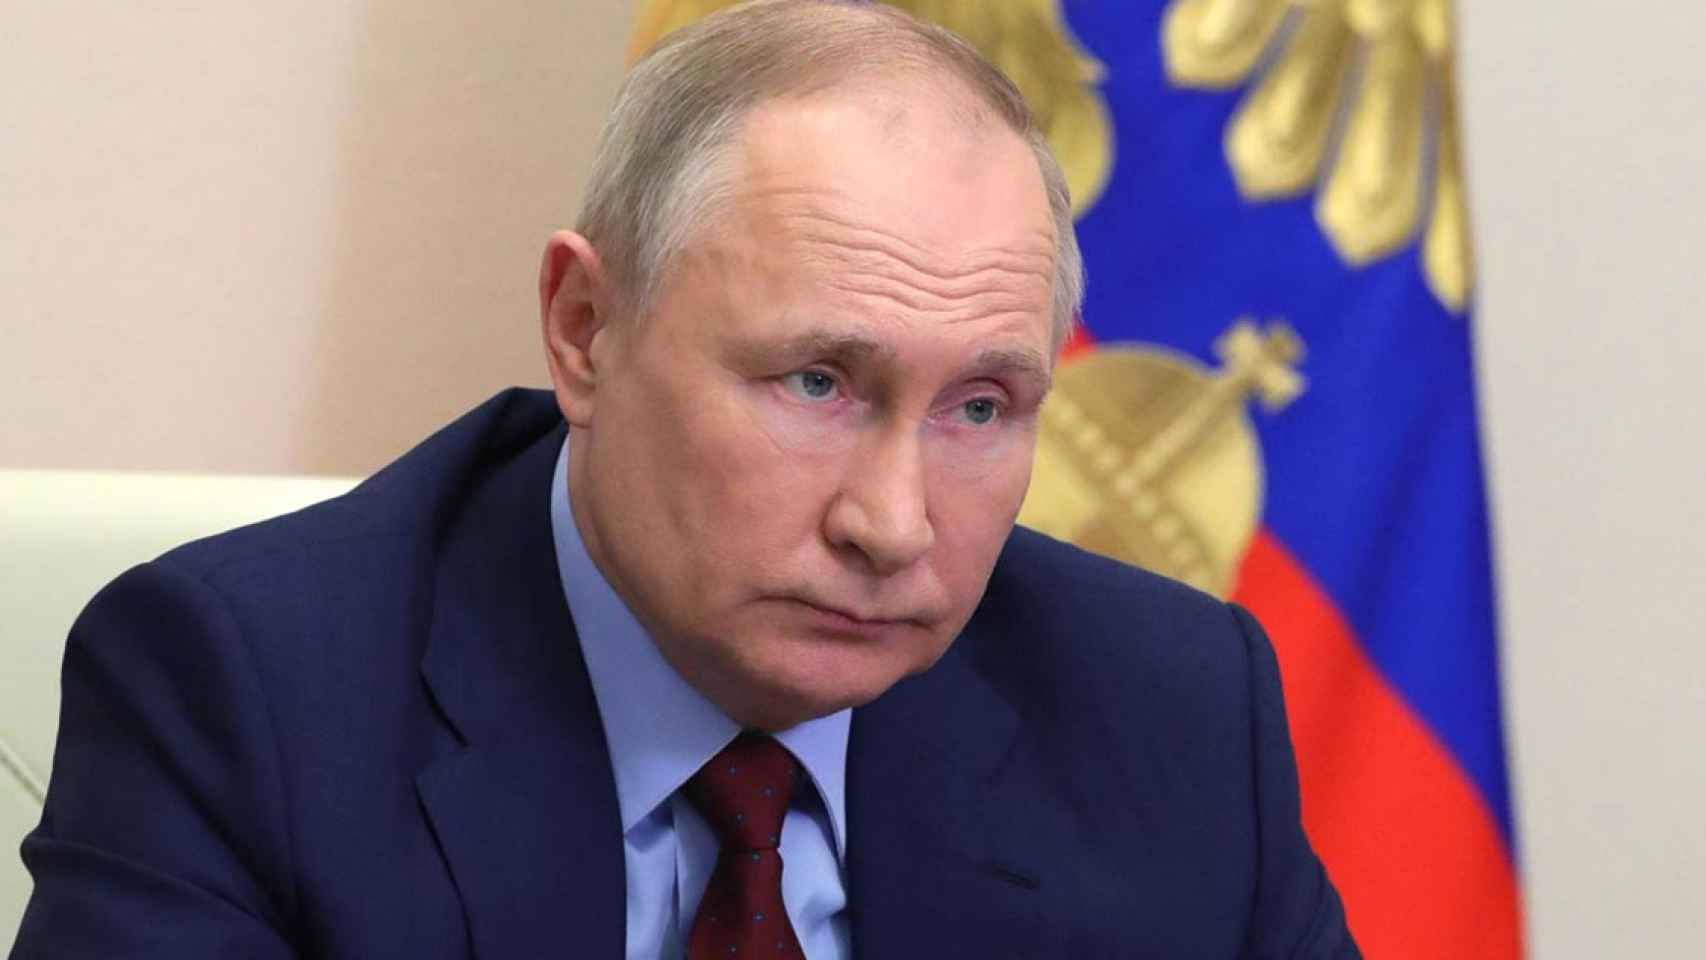 El presidente de Rusia, Vladimir Putin / MIKHAIL KLIMENTYEV - POOL KREMLIN